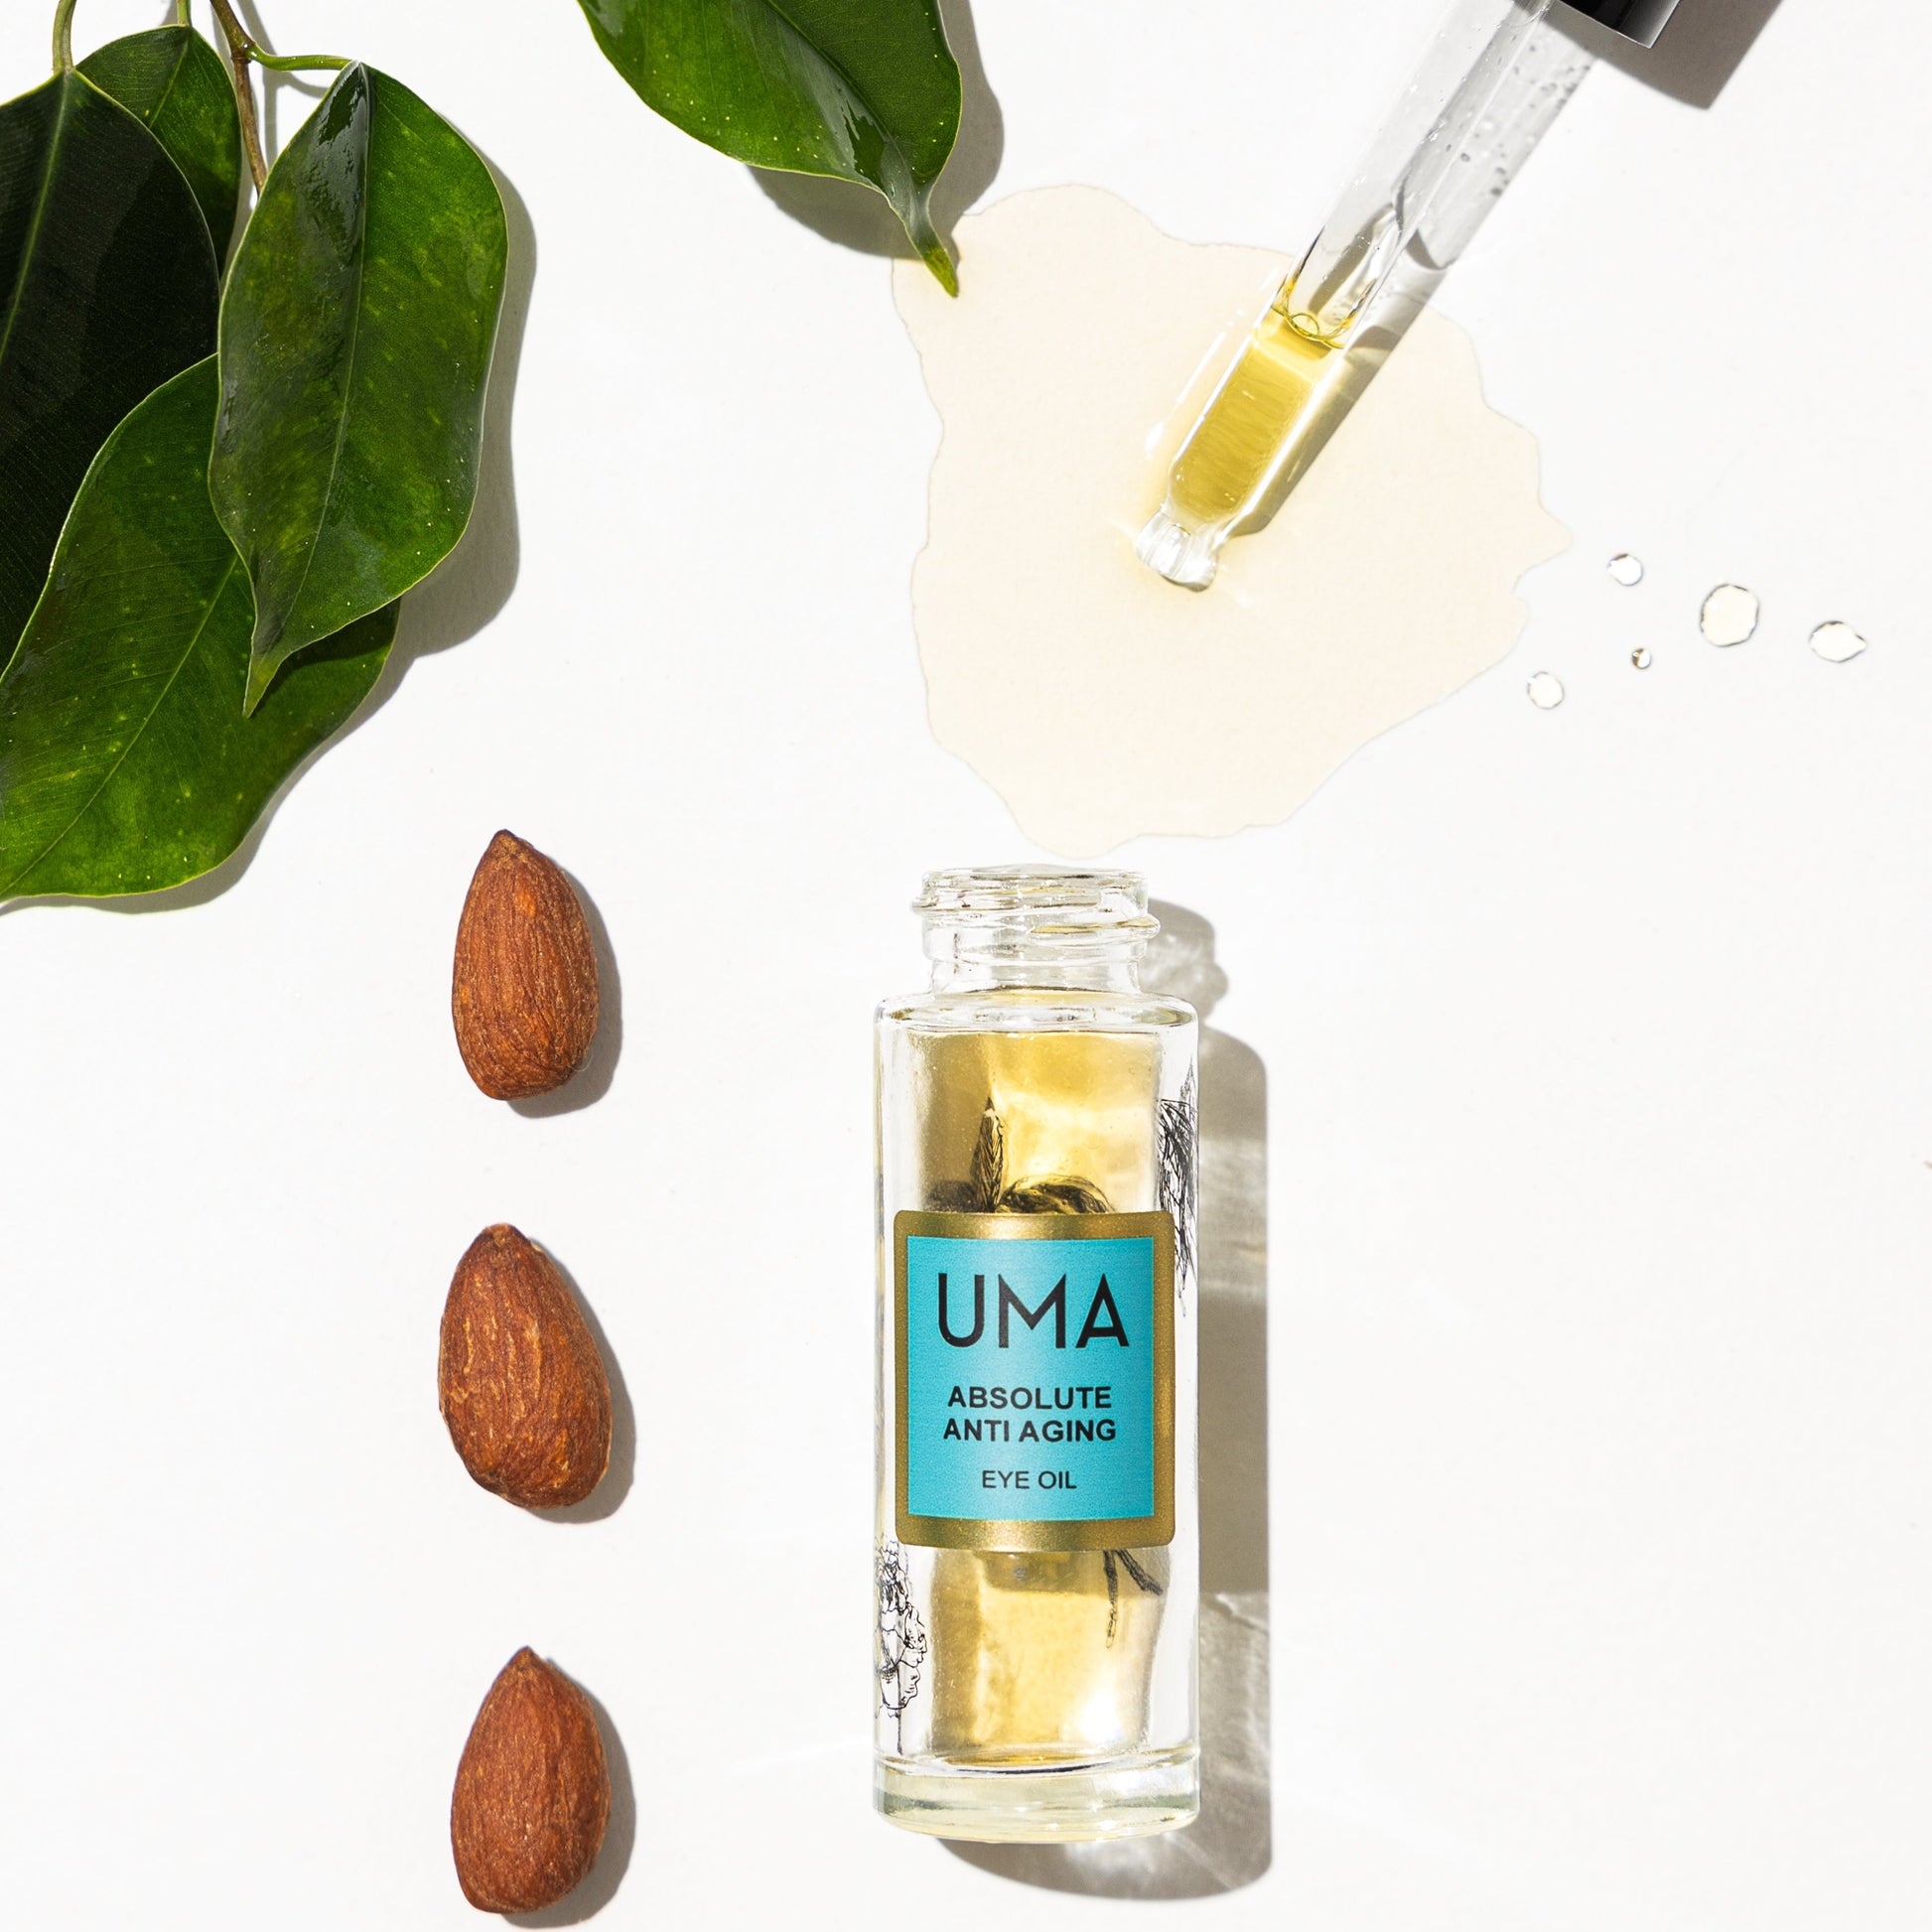 UMA All of Absolute Anti Aging - Uma Oils